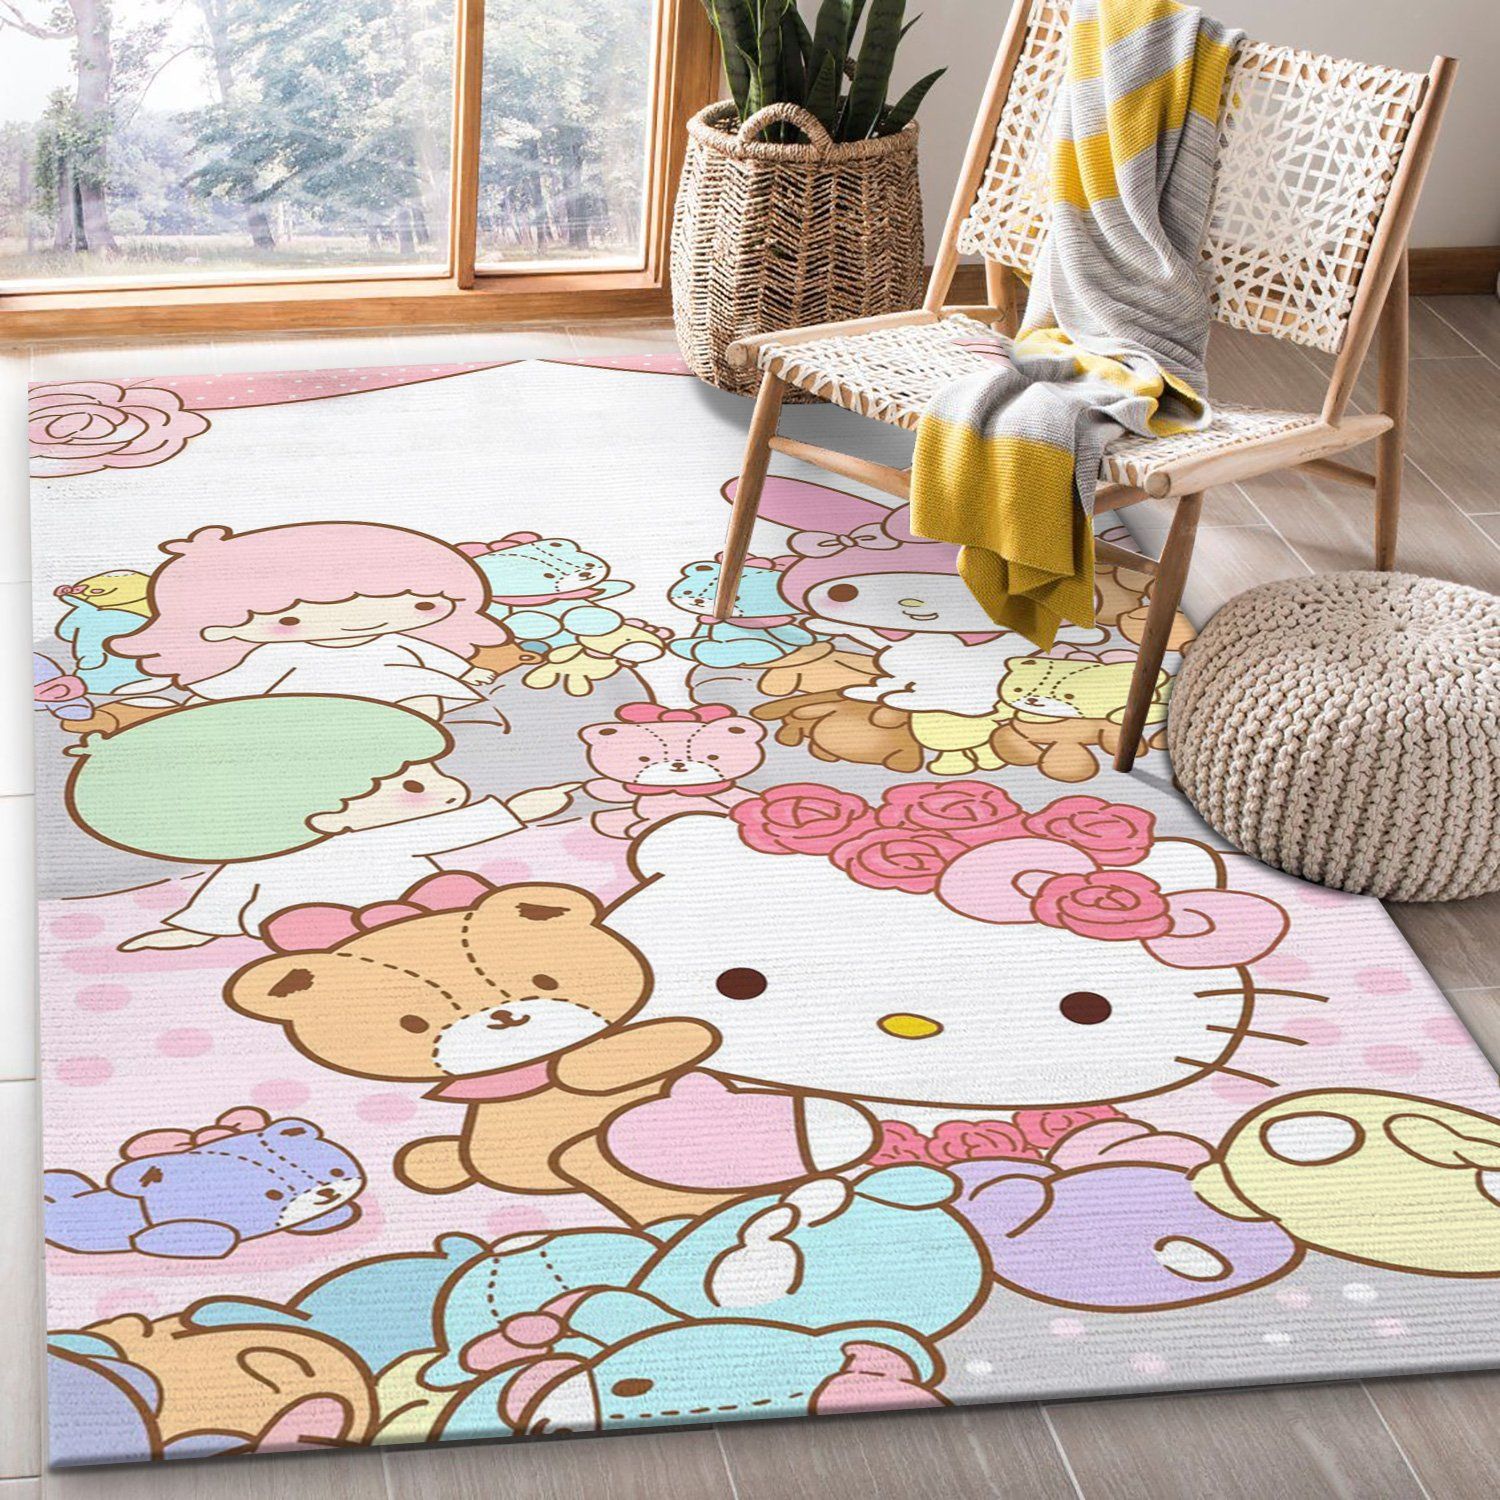 Details about   Cute Little Twin Stars Bedroom Doormat Floor Mat Rug Carpet Home Room Kids Gift 